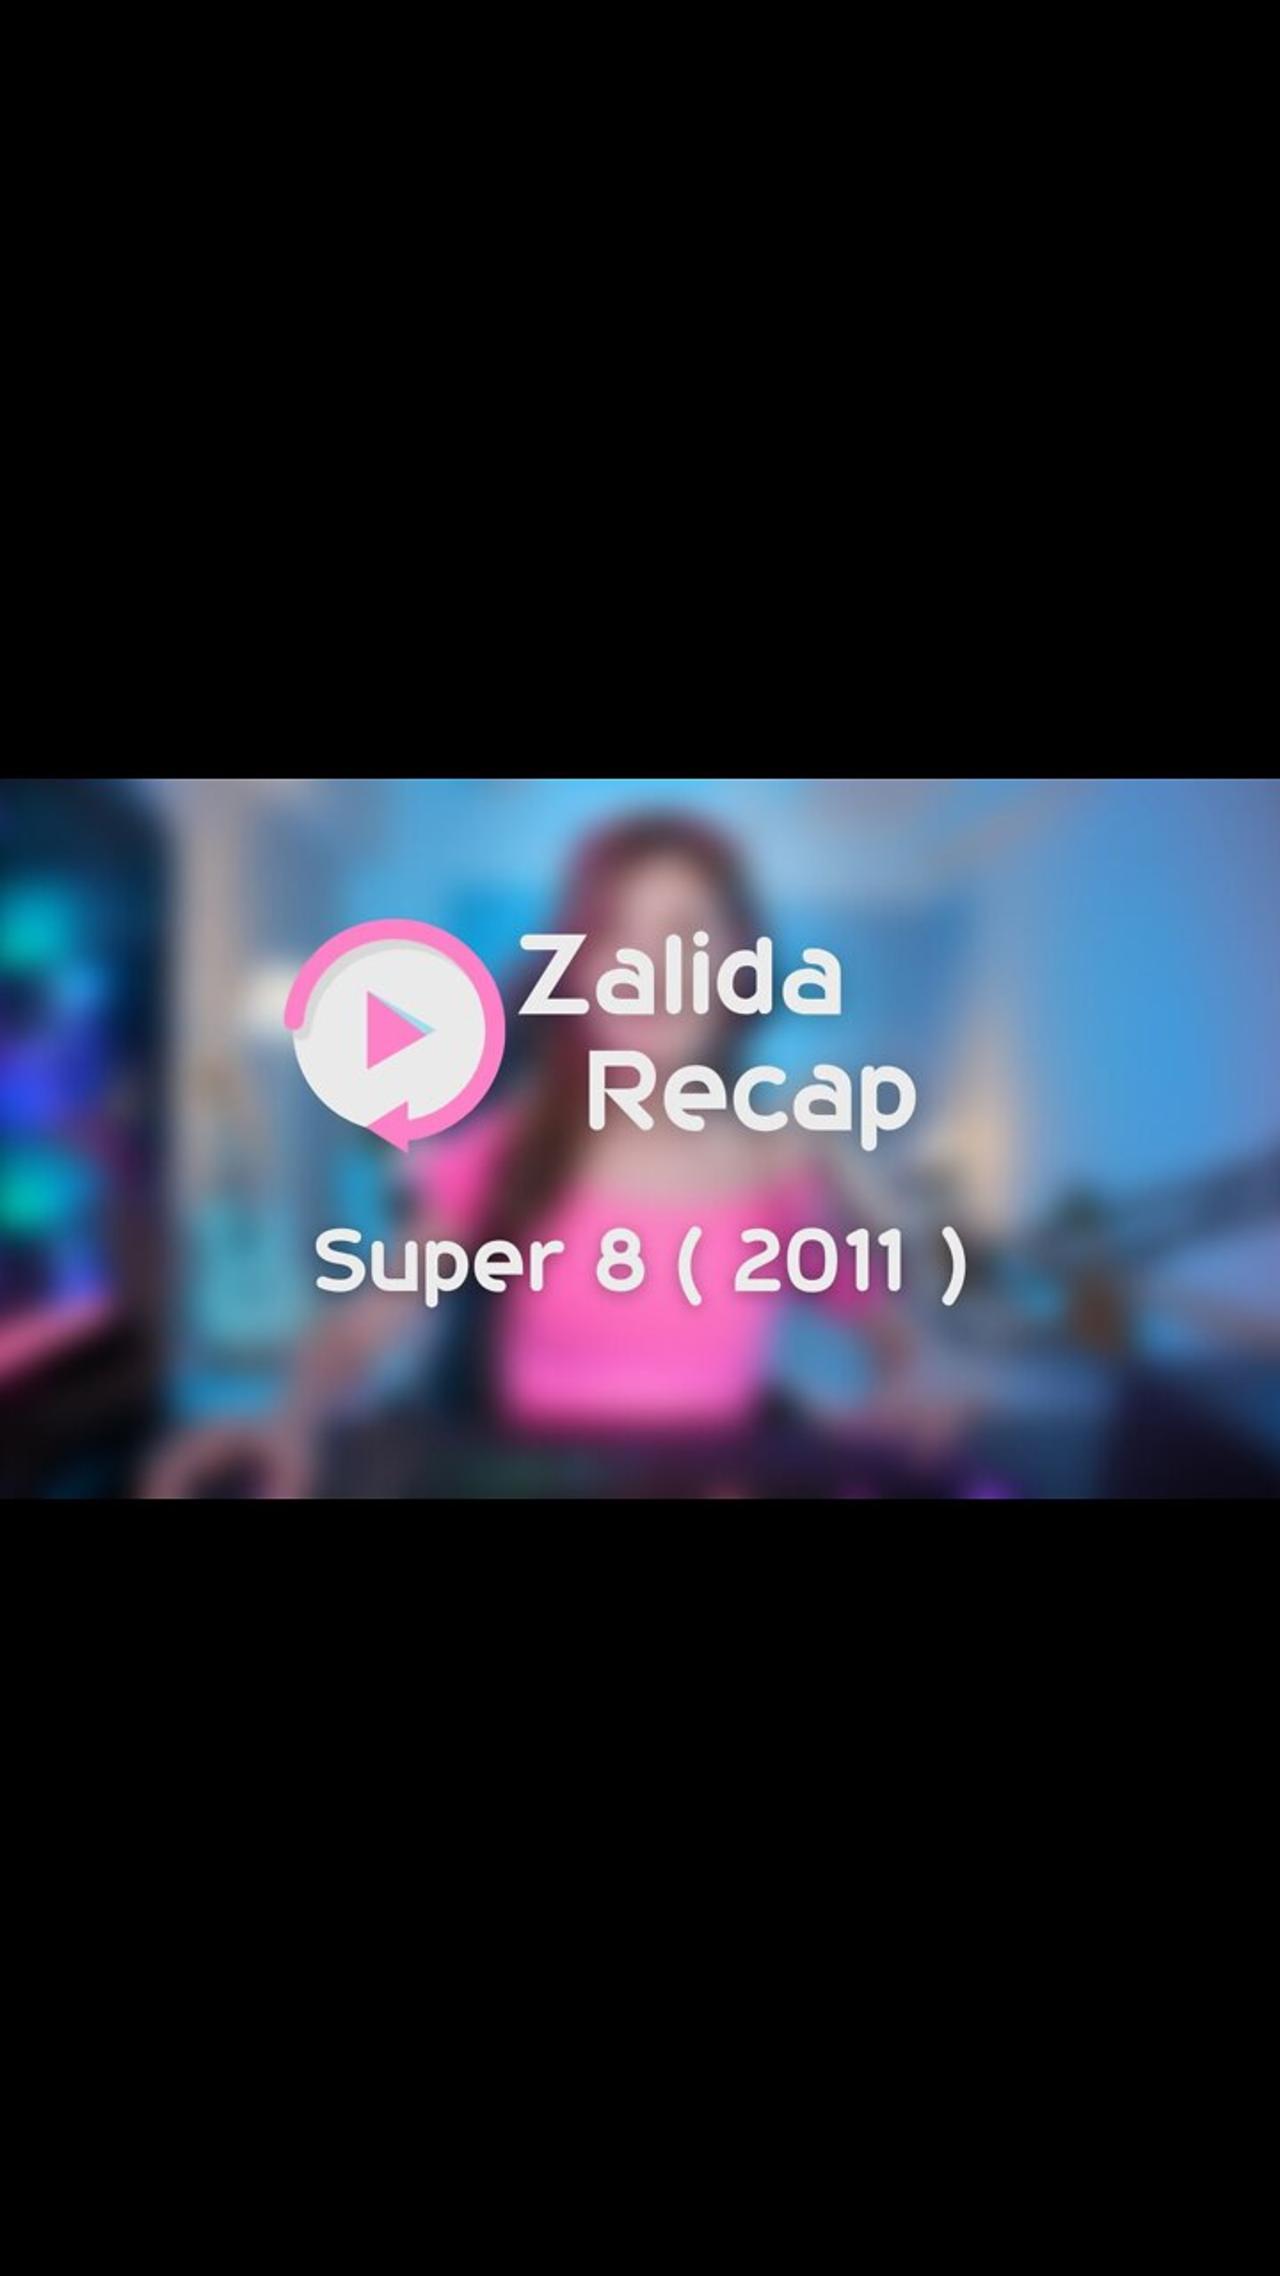 Super 8 ( 2011 ) - Movie Recap Summary